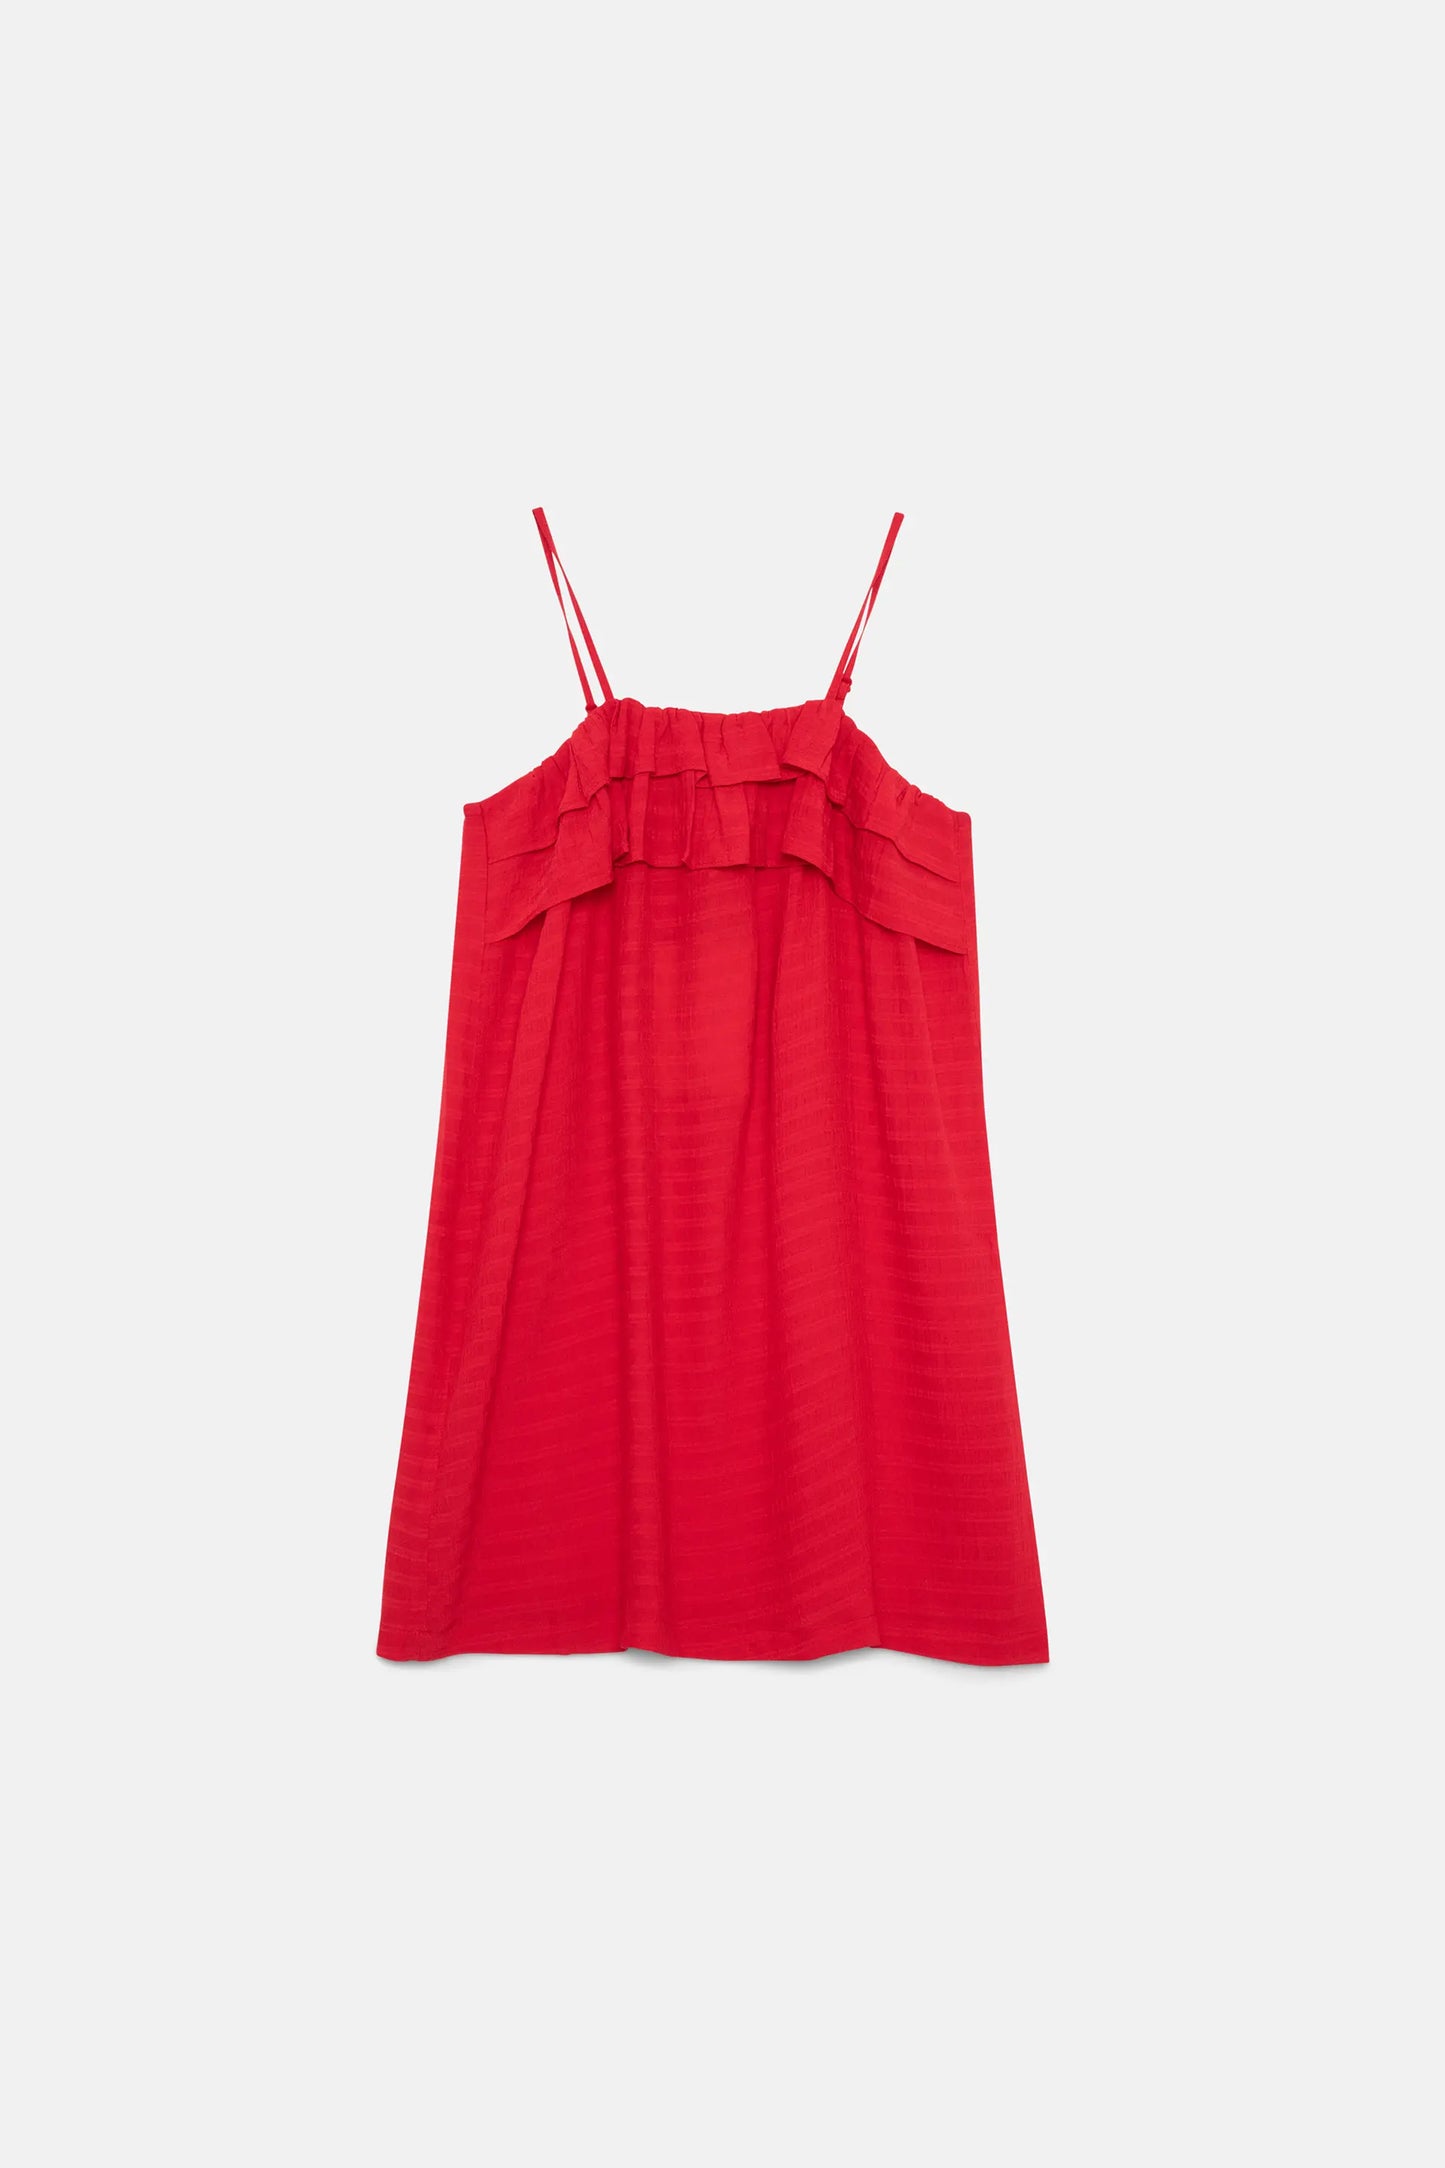 Short red ruffled girl's dress